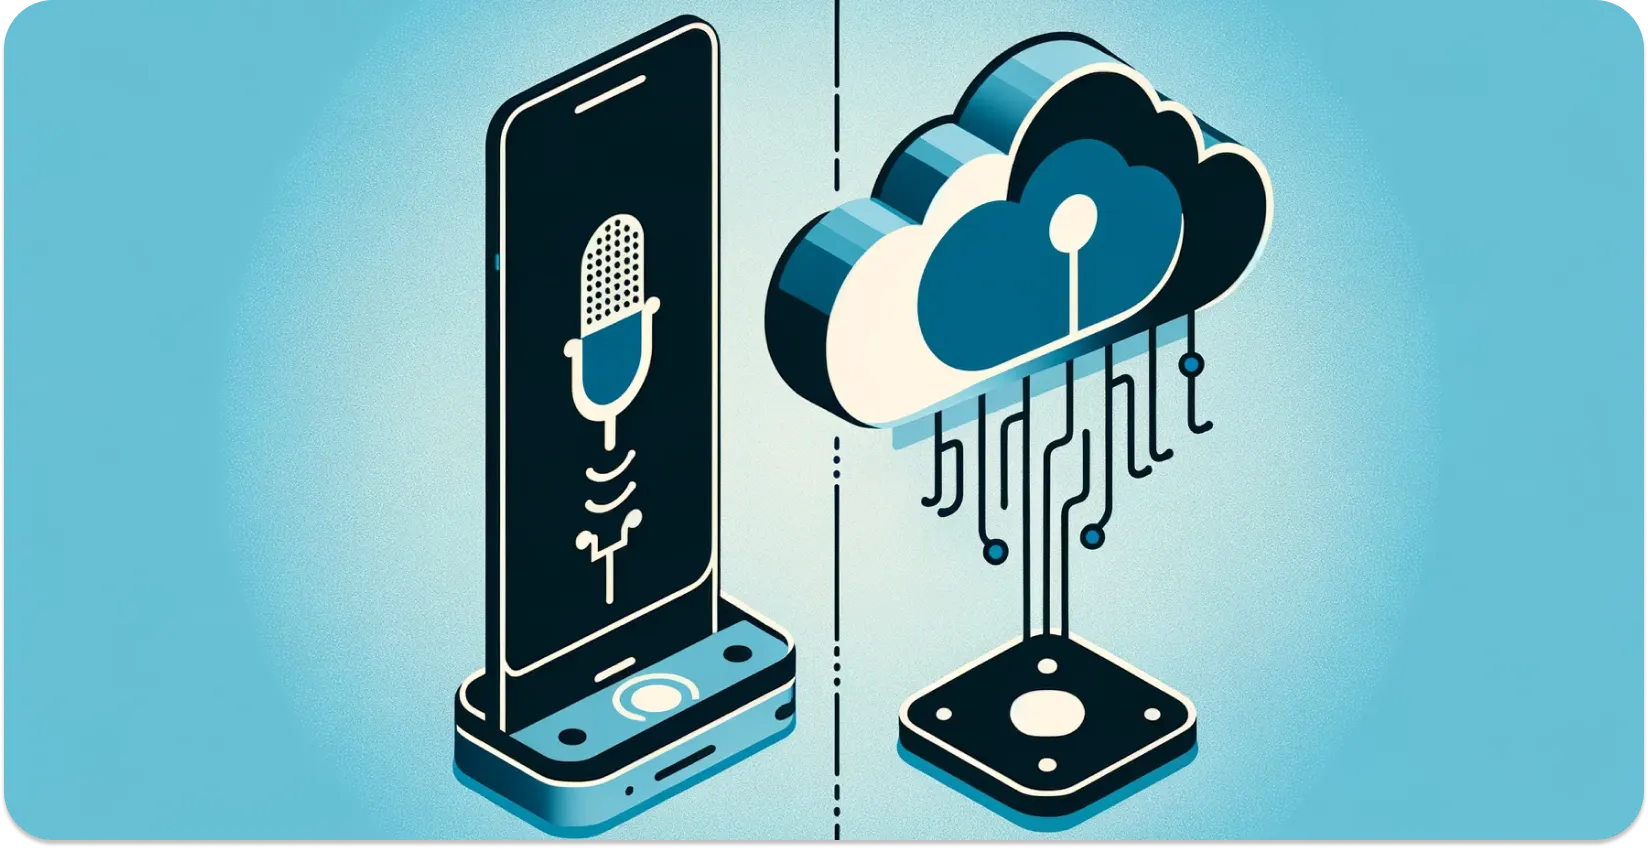 Loại nhận dạng giọng nói nhúng và dựa trên đám mây trong sử dụng công nghệ hàng ngày.